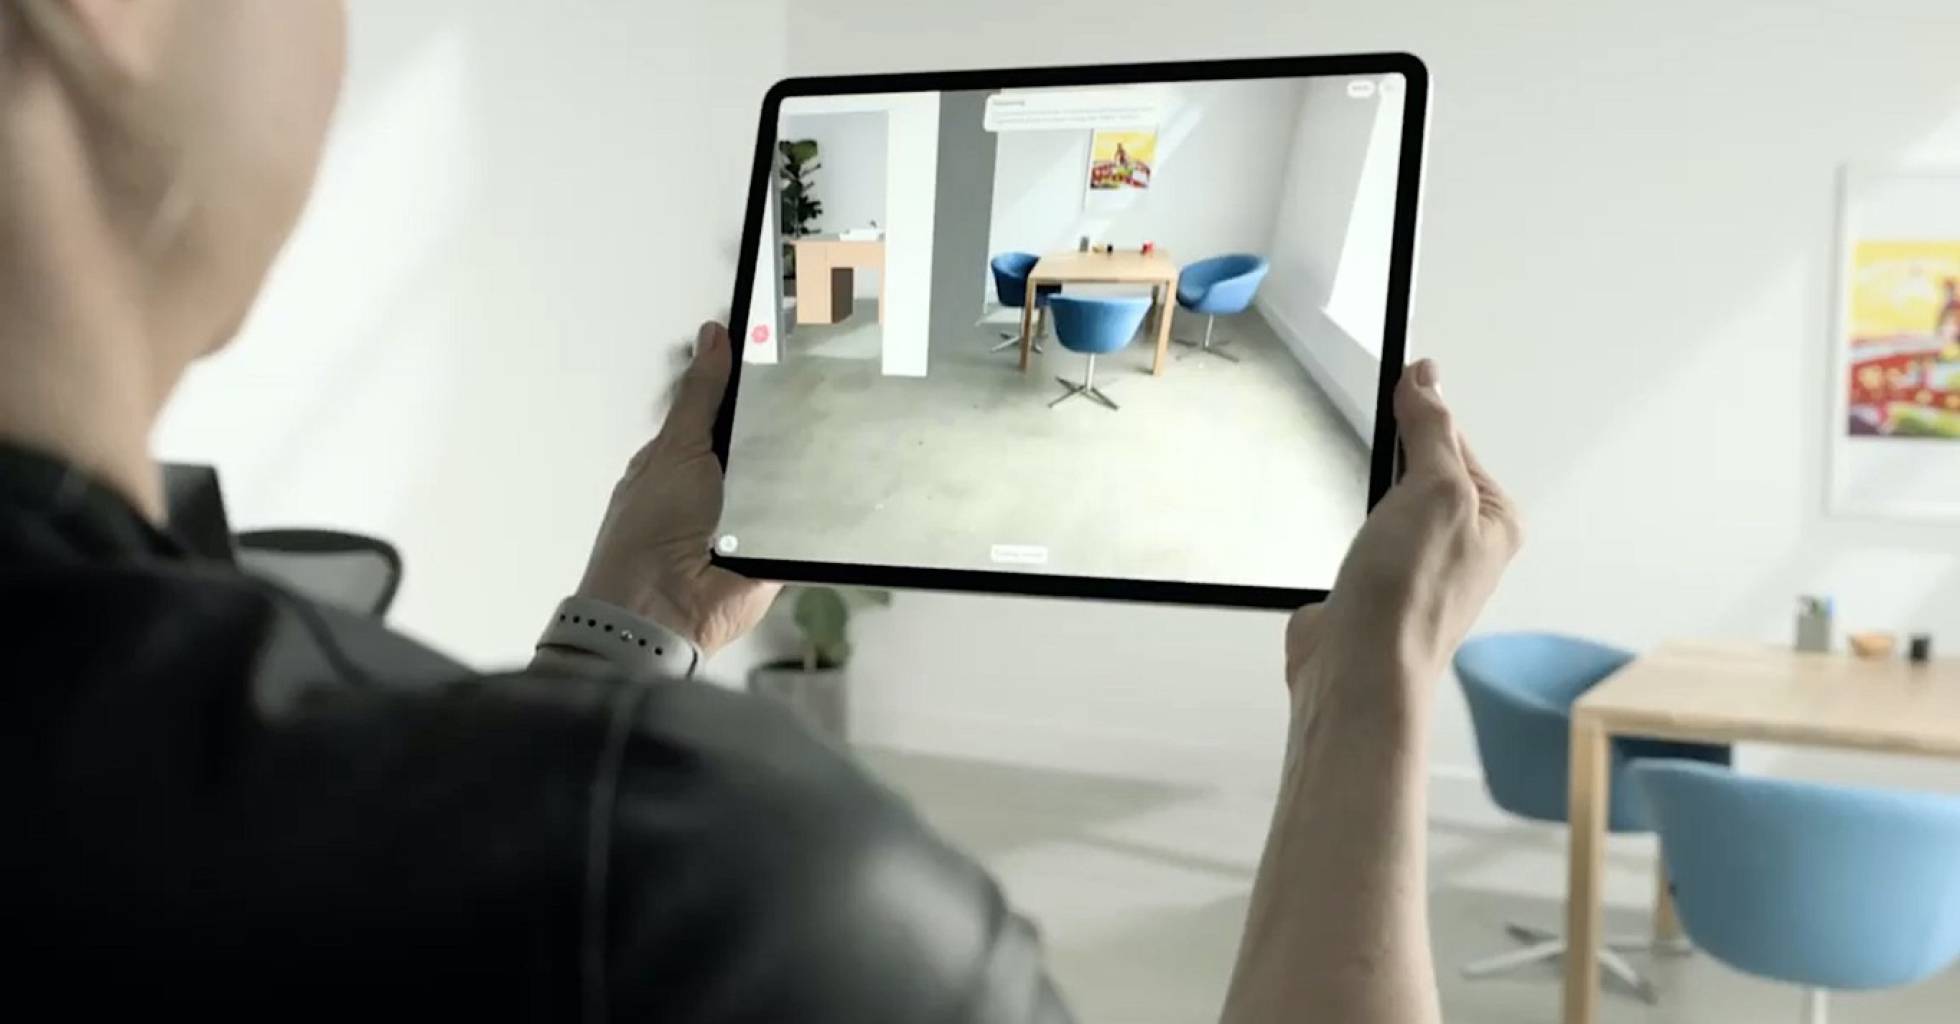 realidade aumentada no iPad pro 2020.